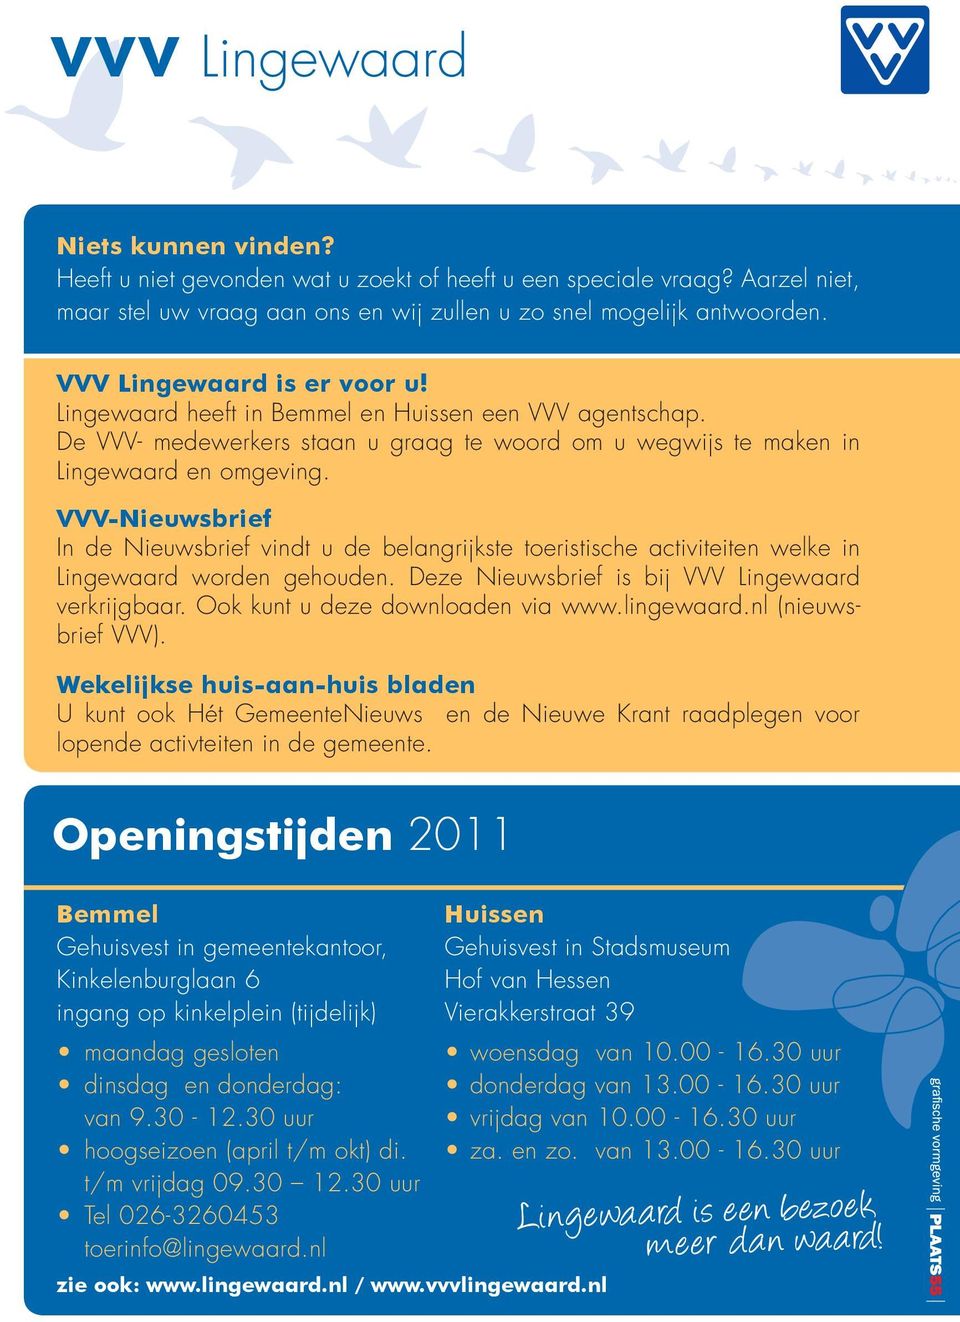 VVV-Nieuwsbrief In de Nieuwsbrief vindt u de belangrijkste toeristische activiteiten welke in Lingewaard worden gehouden. Deze Nieuwsbrief is bij VVV Lingewaard verkrijgbaar.